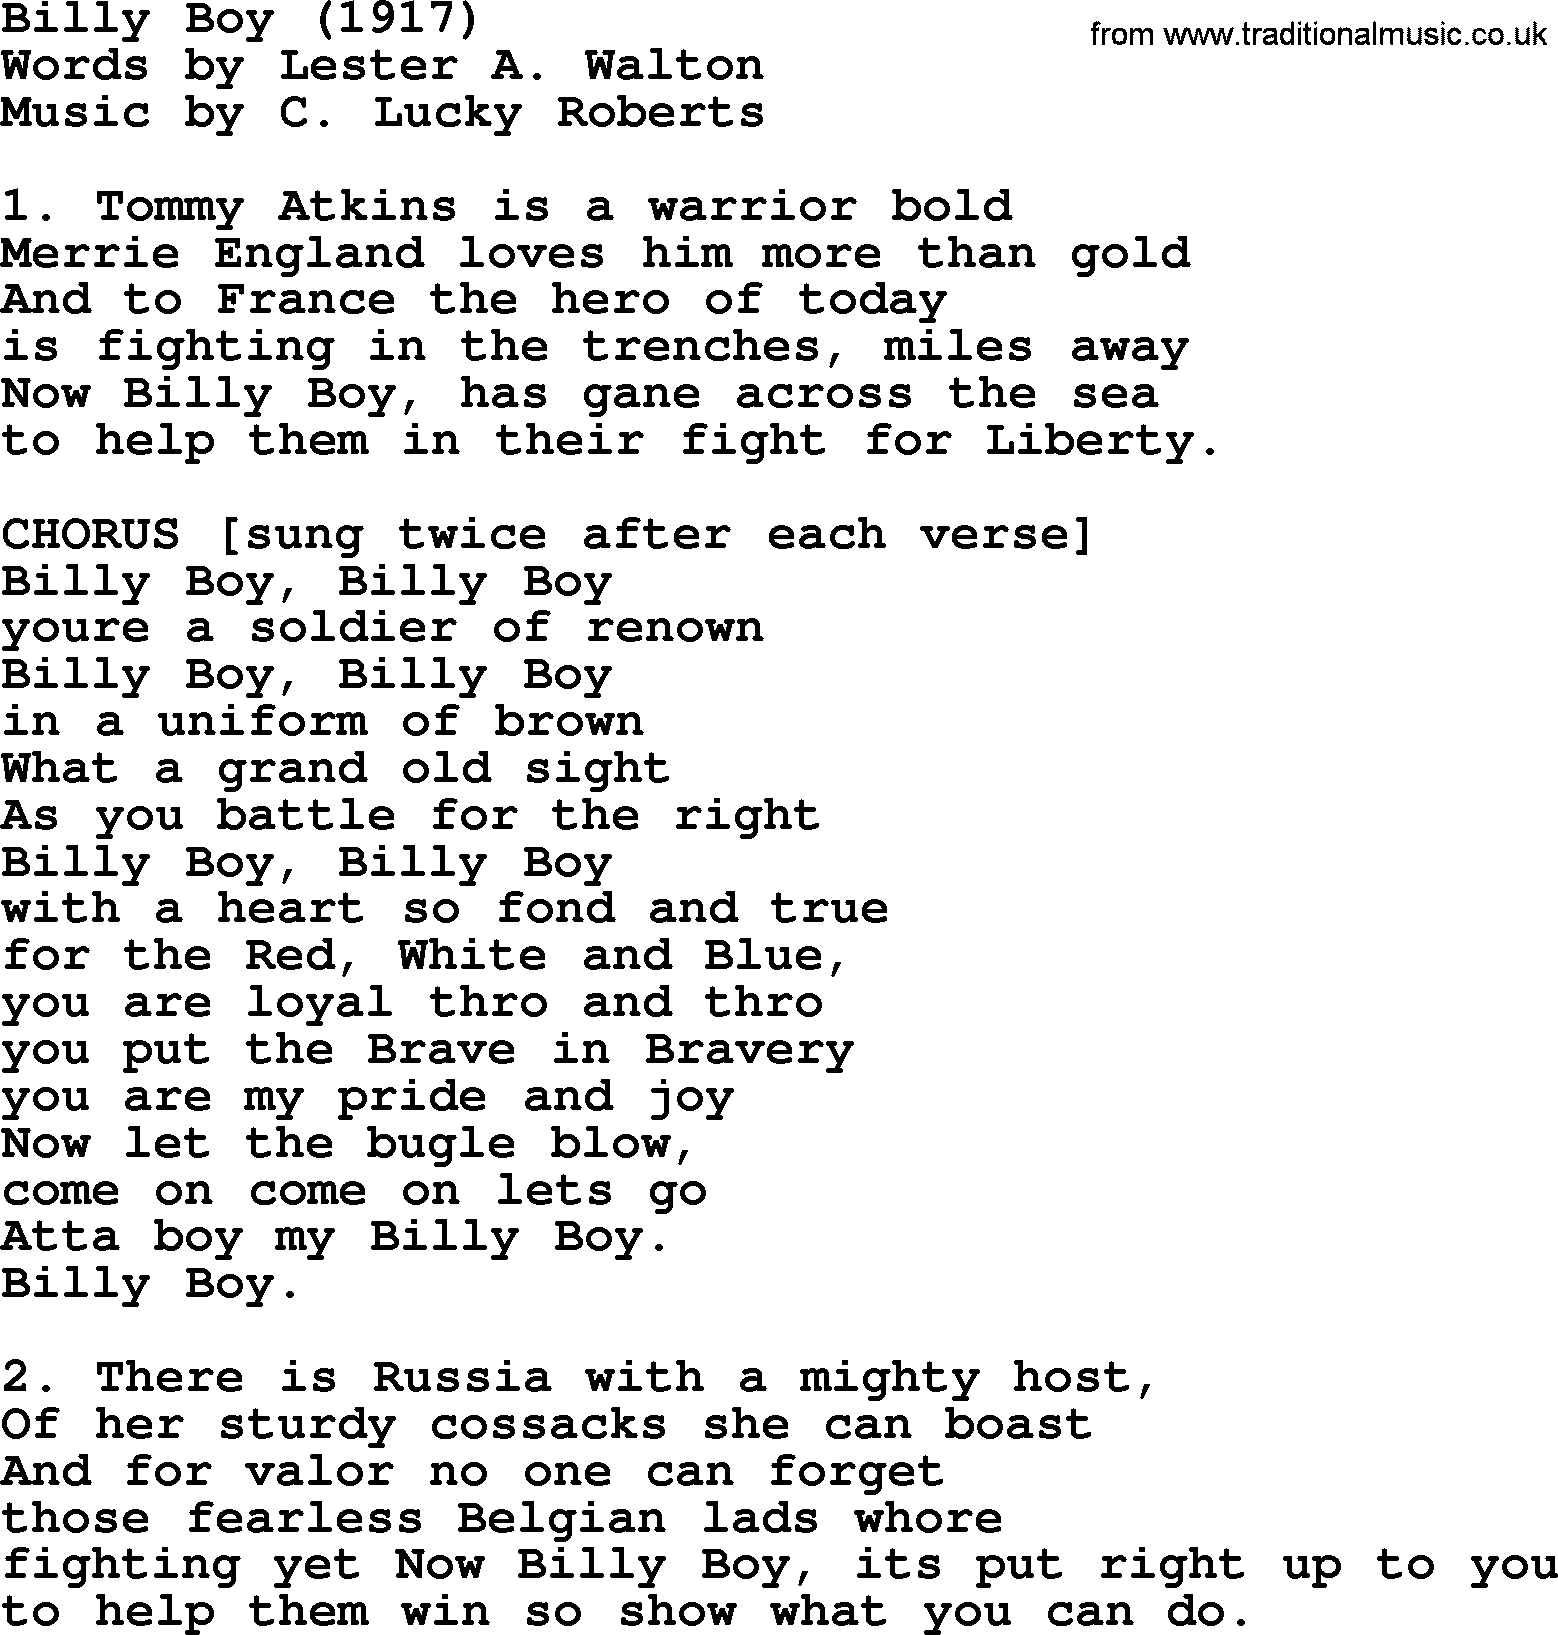 World War(WW1) One Song: Billy Boy 1917, lyrics and PDF